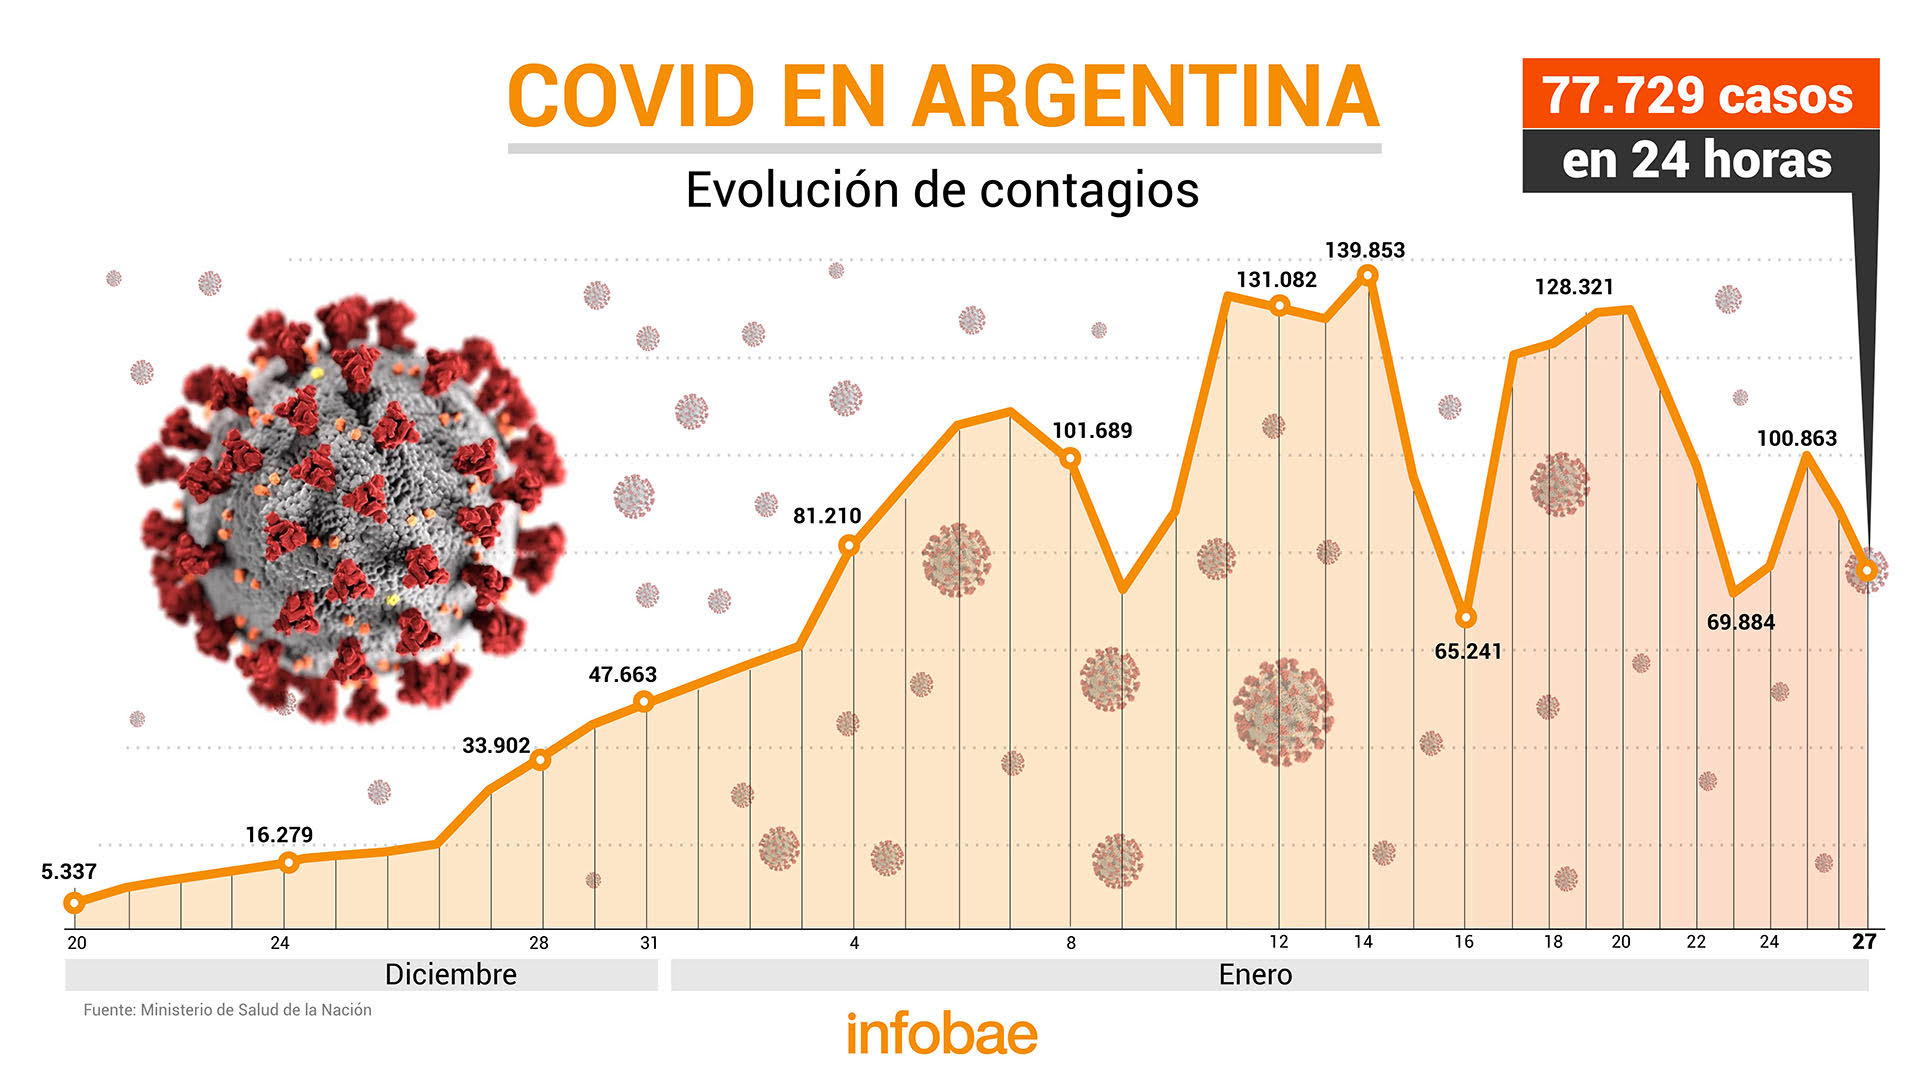 Coronavirus en Argentina: confirmaron 77.729 contagios y 334 muertes, la mayor cifra en más de cinco meses 